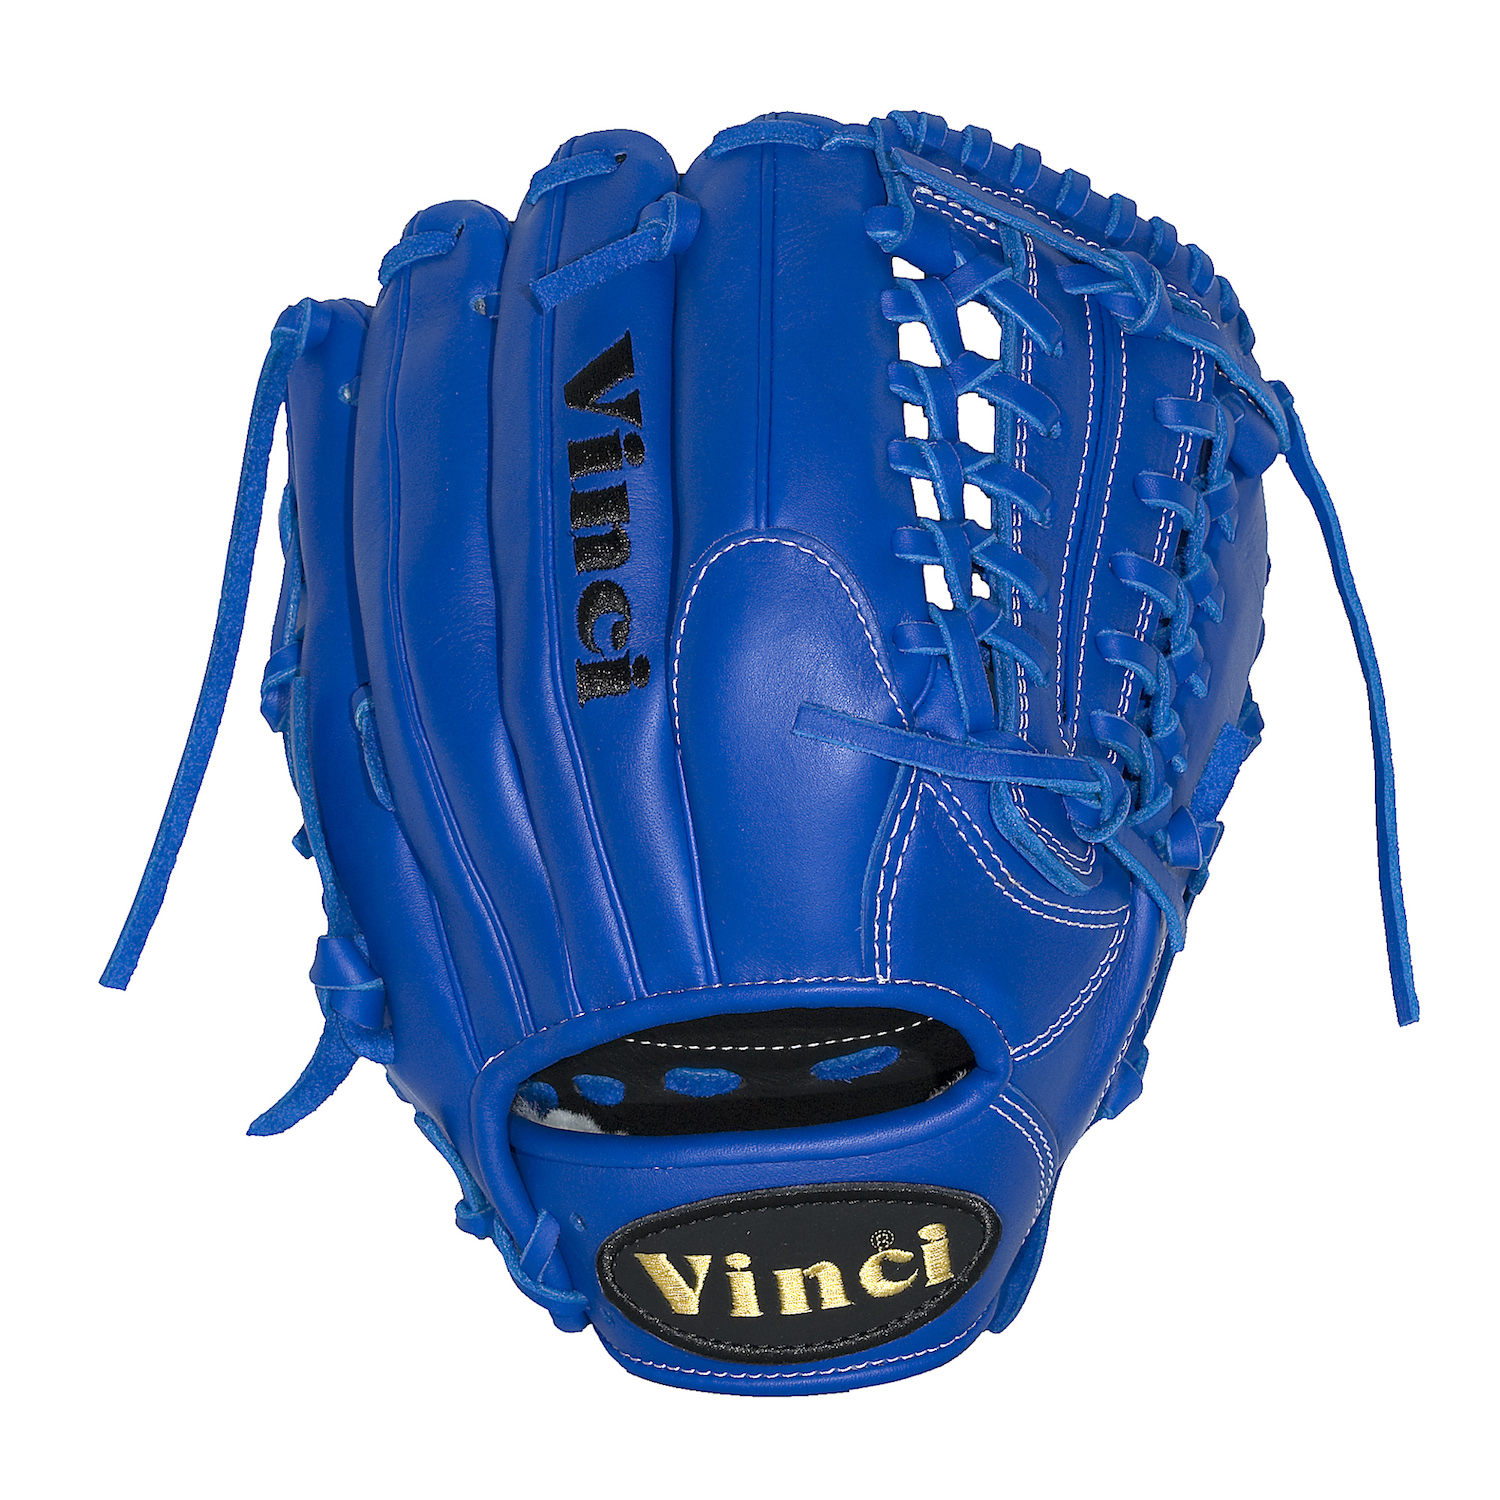 Baseball Glove model JC3300-L Blue : 11.5 inch Net-T Web by Vinci